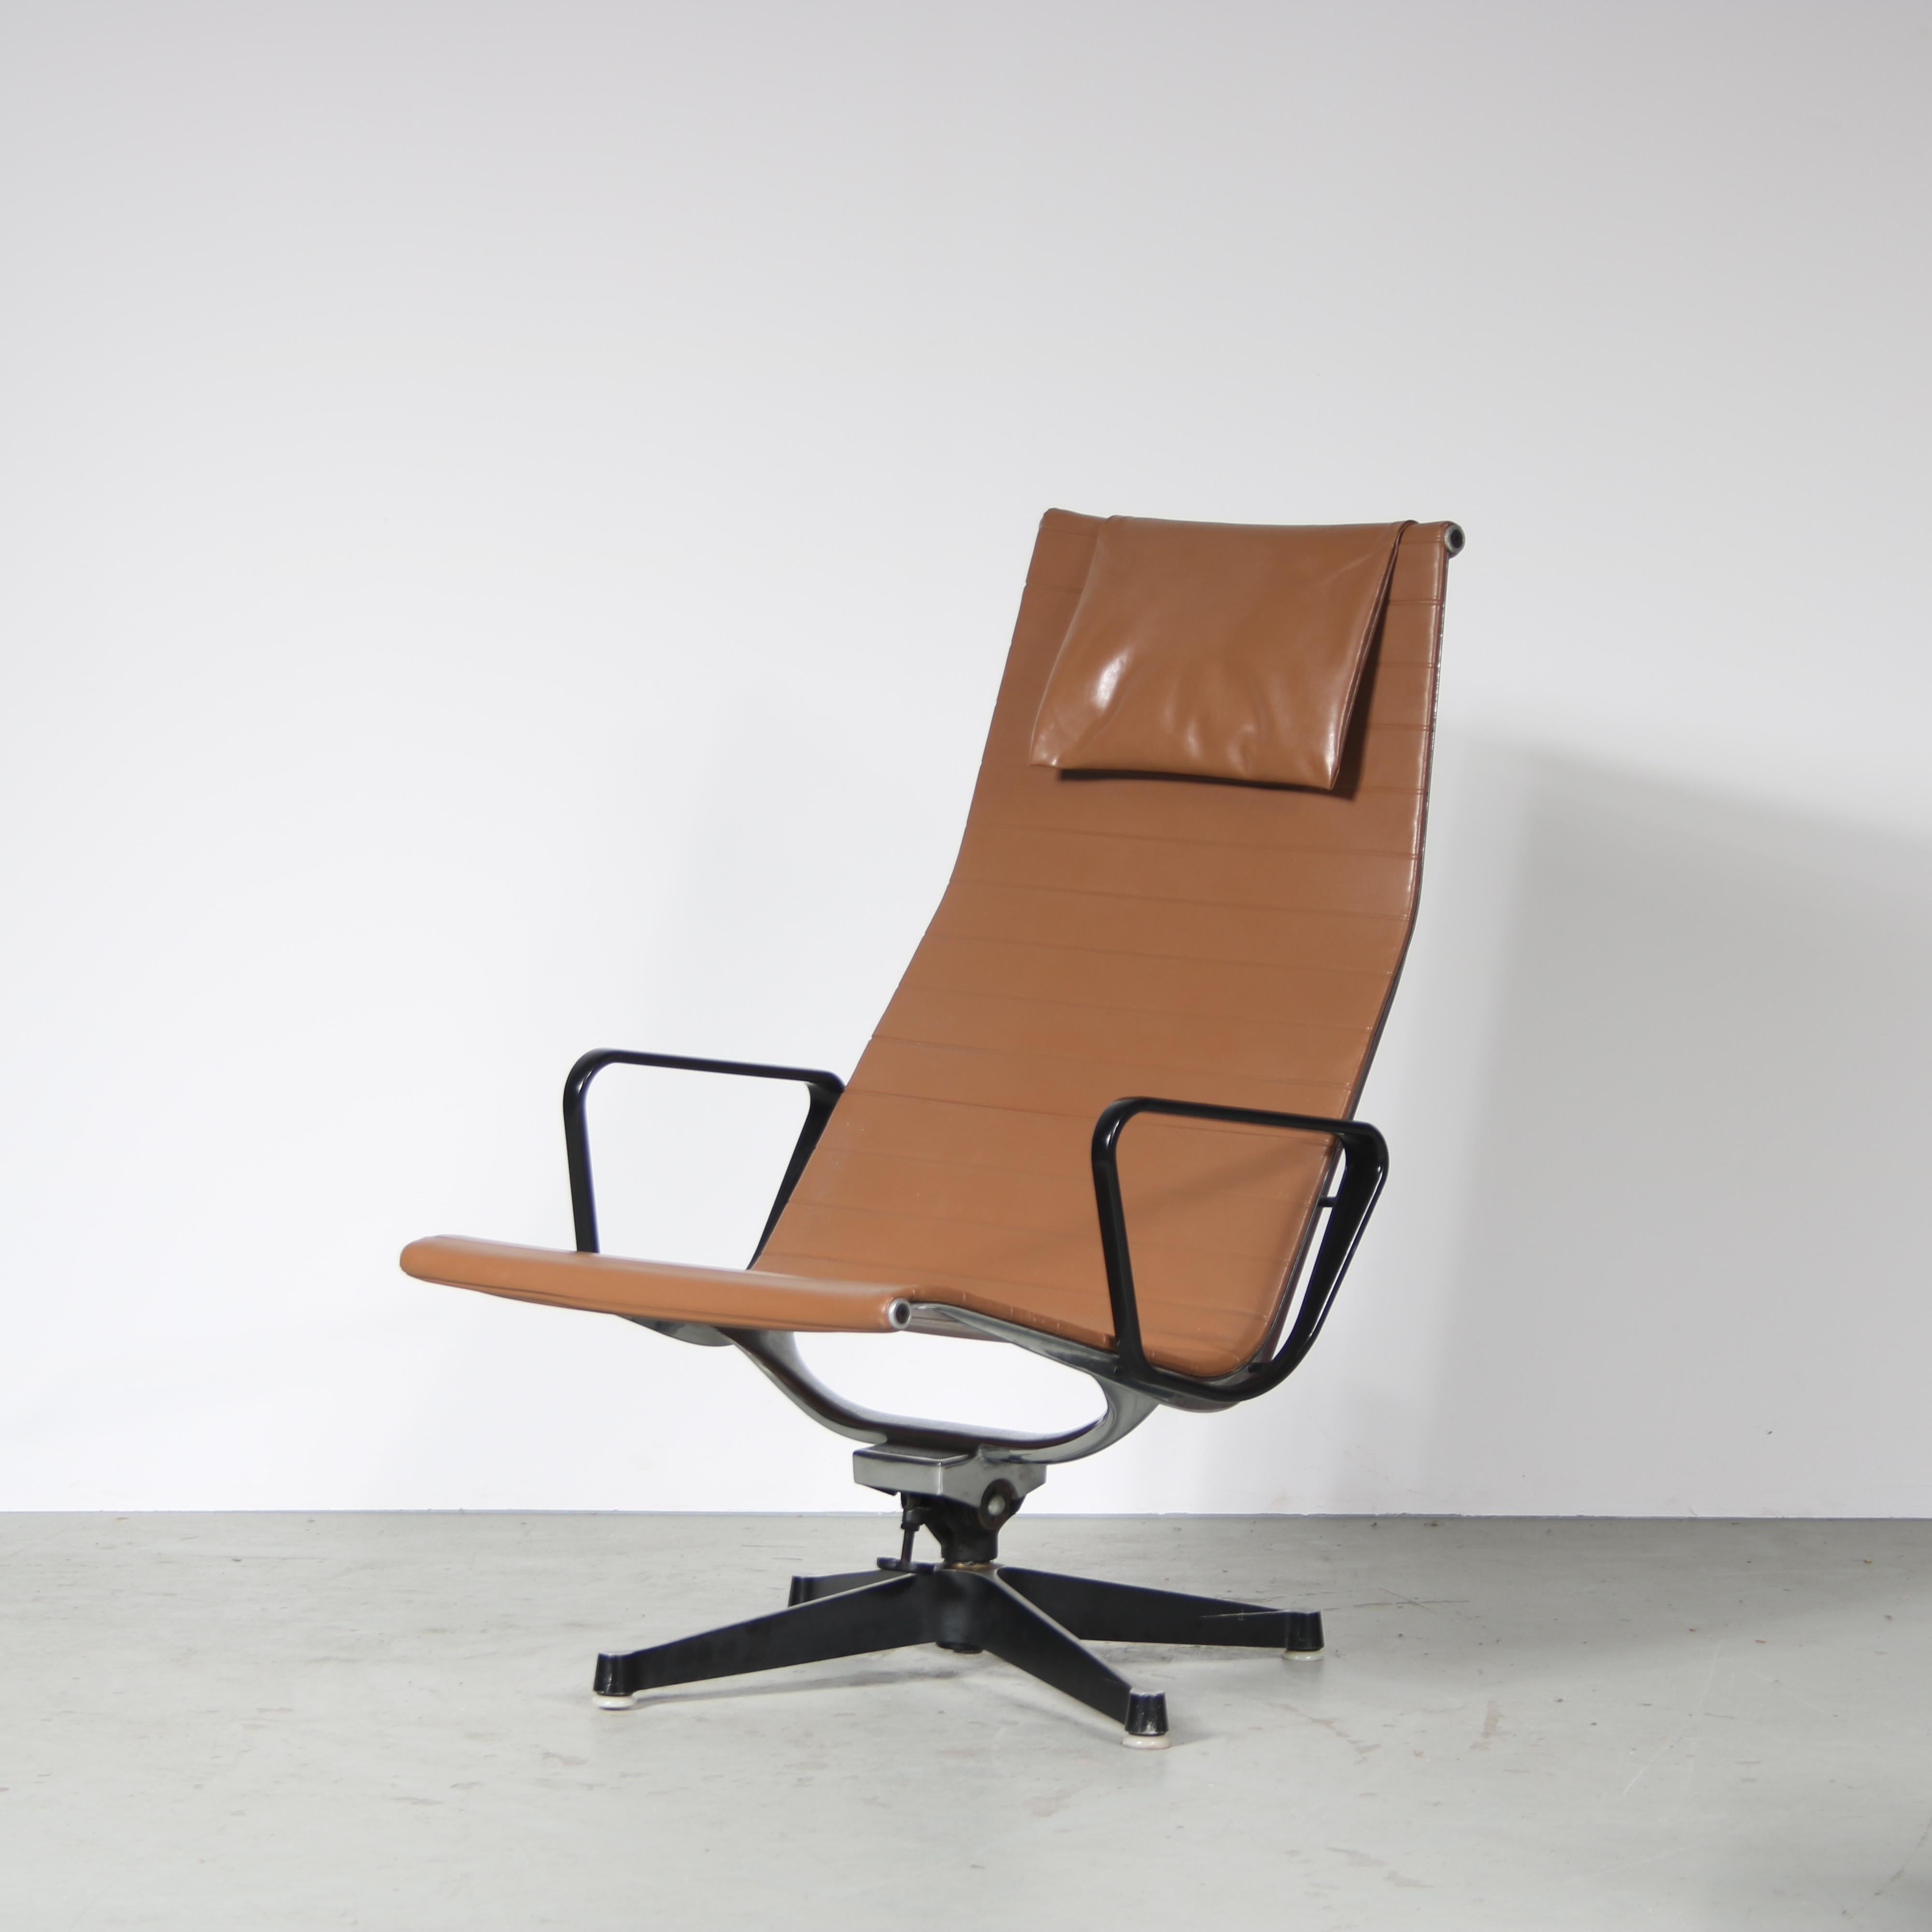 

Ein wunderbarer Sessel, Modell EA 124, entworfen von Charles & Ray Eames und hergestellt von Herman Miller in den USA um 1960.

Dieser auffällige Stuhl hat einen hohen Wiedererkennungswert im Design der Mitte des Jahrhunderts! Er hat einen grauen